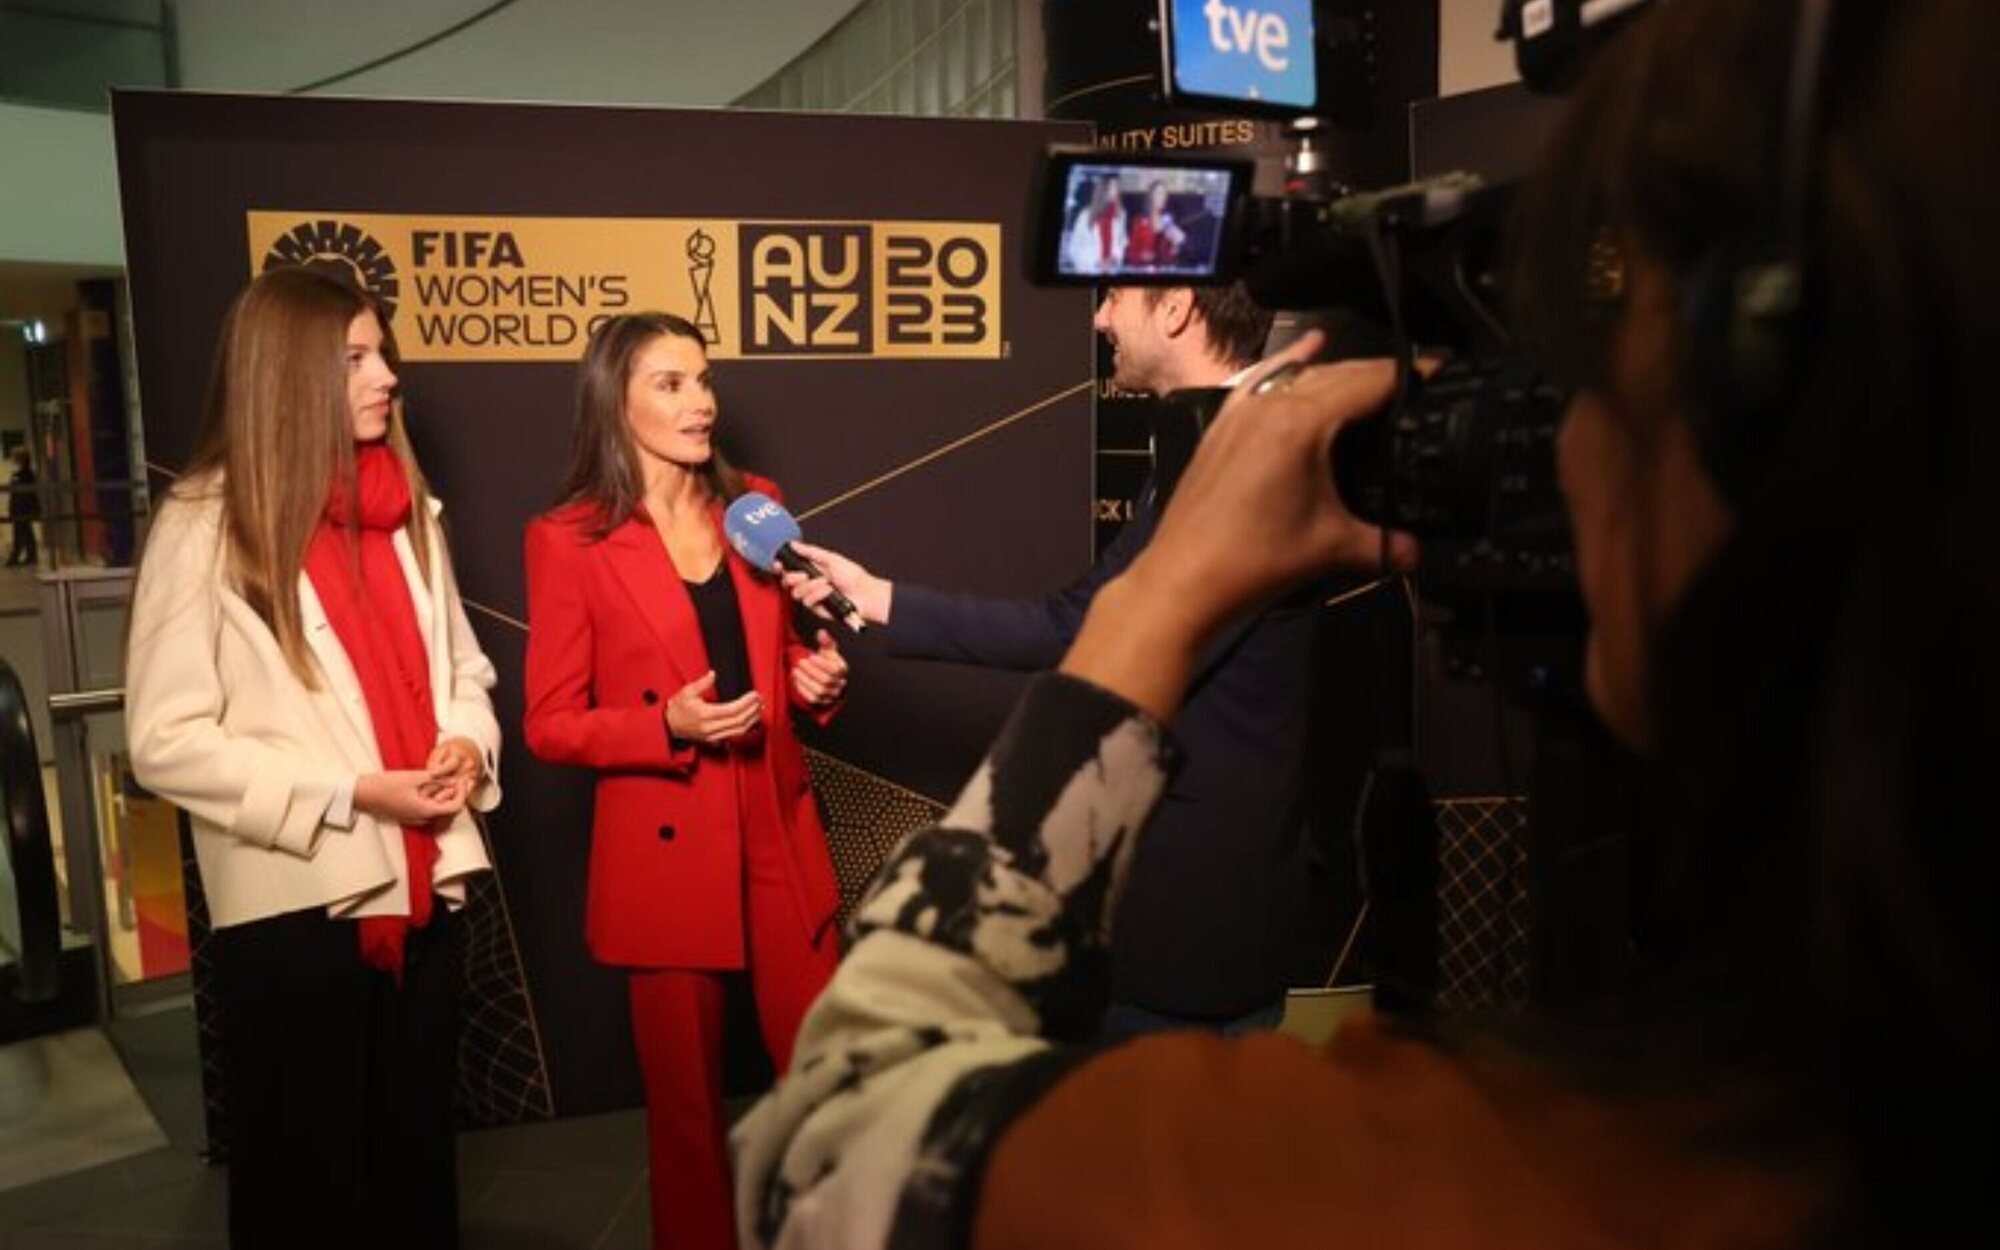 La Reina Letizia, entusiasmada antes de la final del Mundial Femenino de Fútbol: "Ya son unas campeonas"